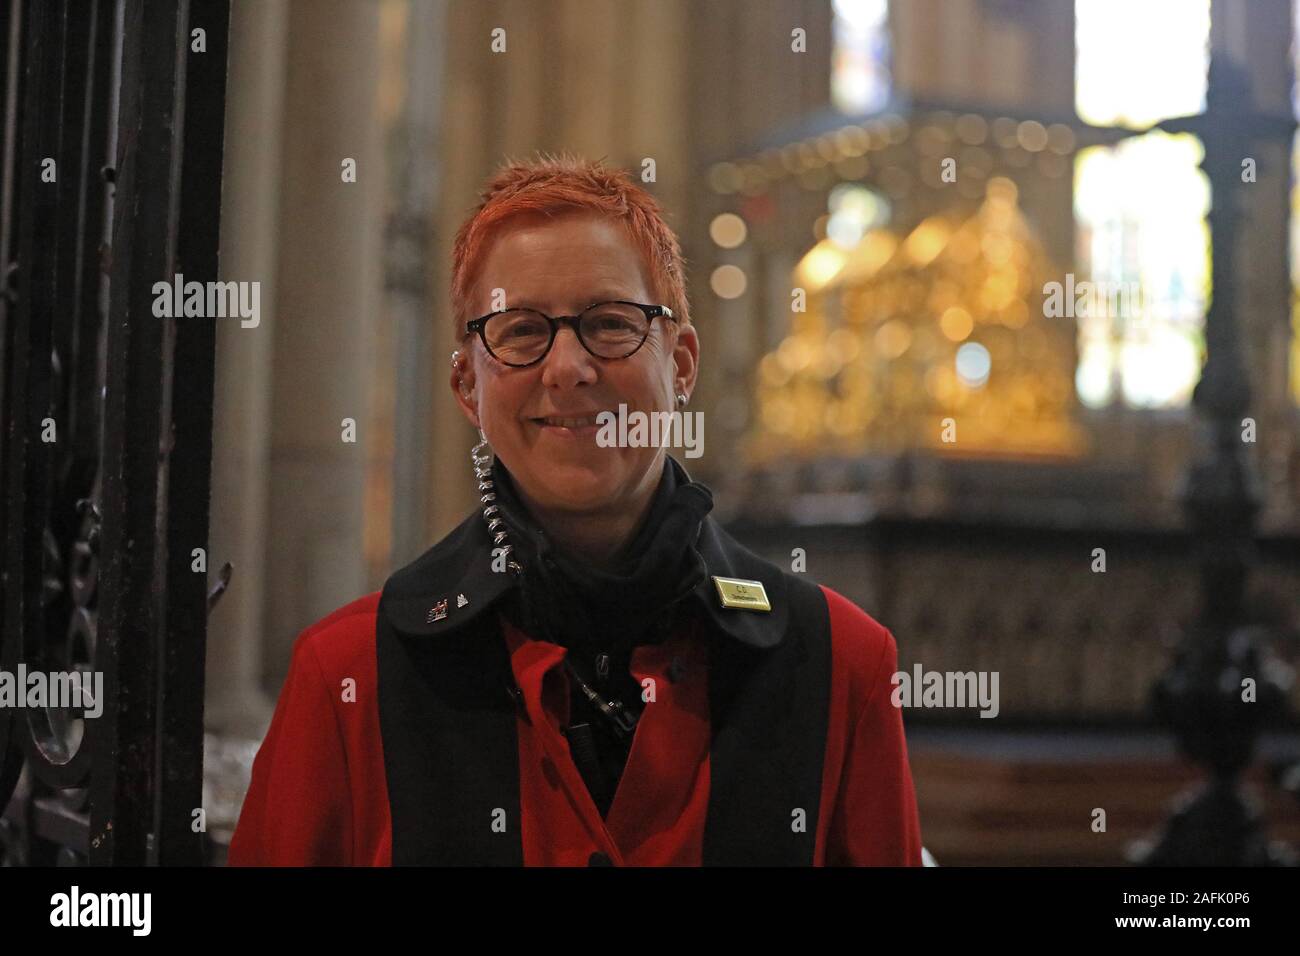 Colonia, Alemania. 07 Nov, 2019. Claudia Drolshagen, un suizo estudioso de la catedral, se encuentra enfrente de la Dreikönigsschrein en la catedral. Crédito: Oliver Berg/dpa/Alamy Live News Foto de stock